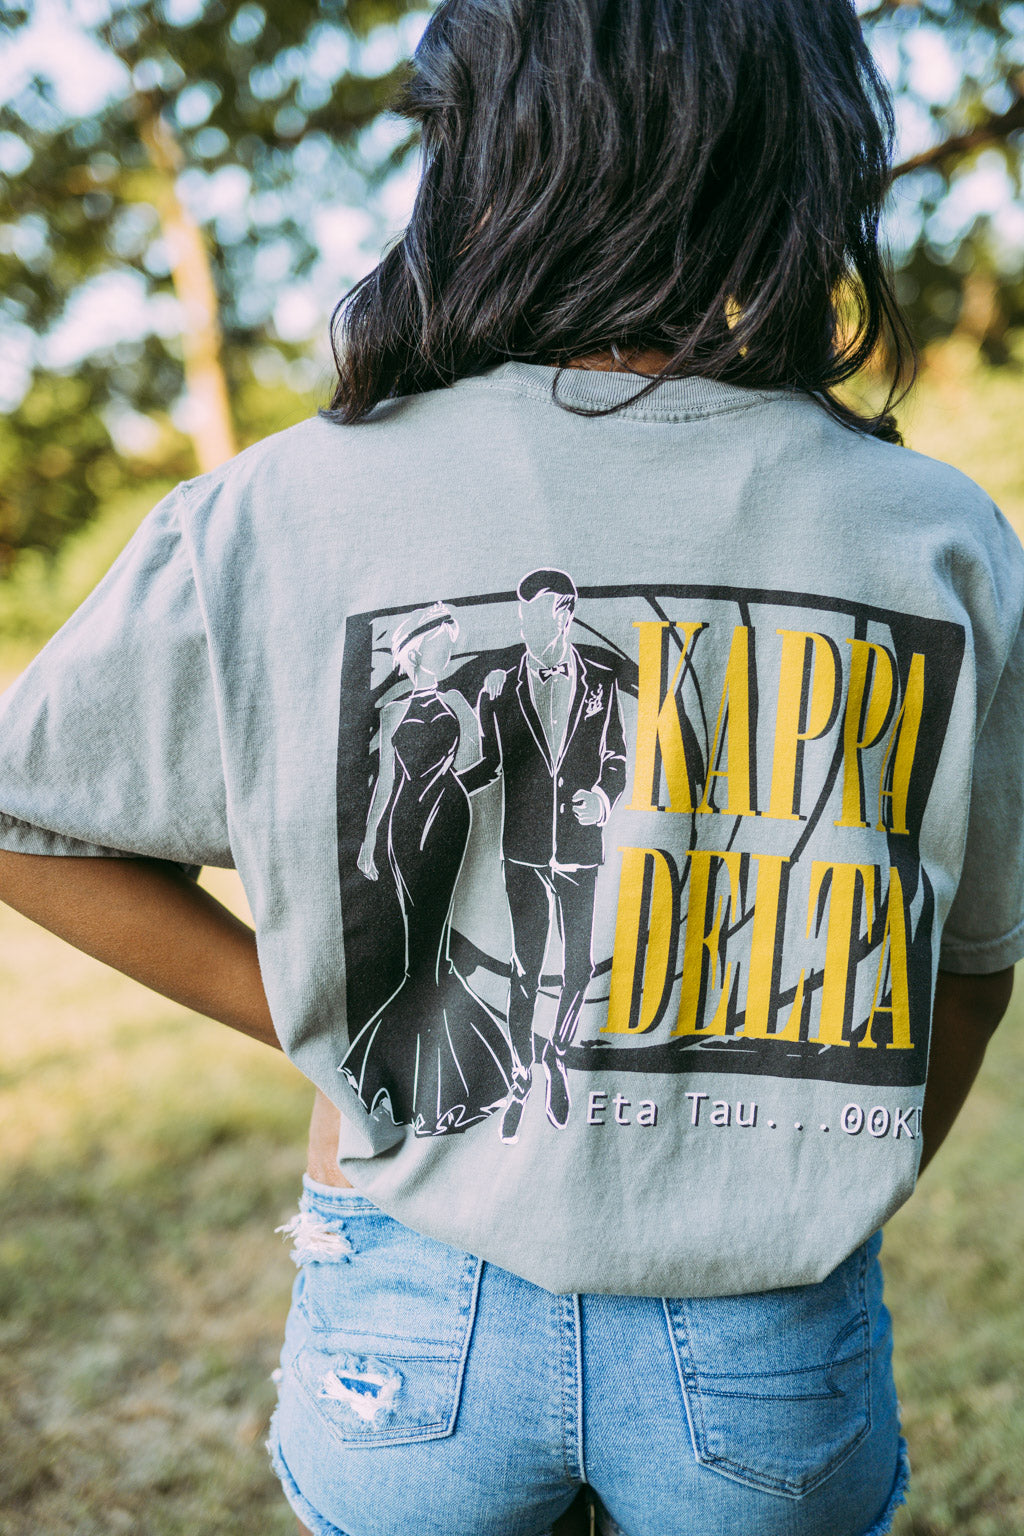 Kappa Delta 00KD Formal Tshirt